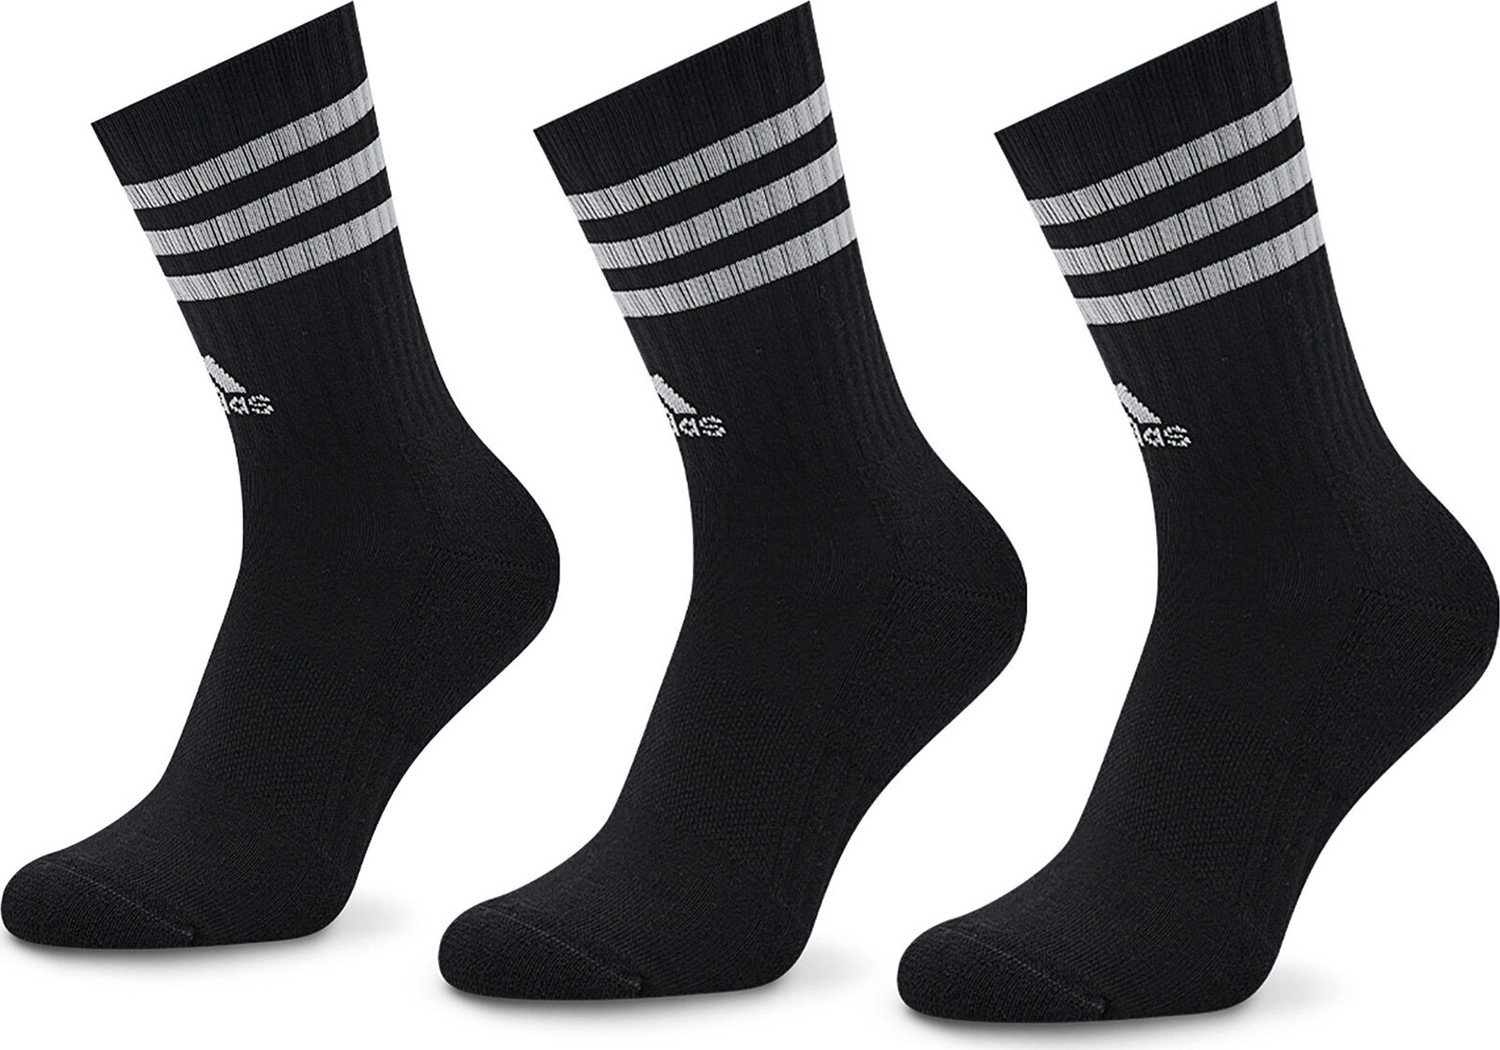 Sada 3 párů vysokých ponožek unisex adidas 3-Stripes IC1321 Black/White